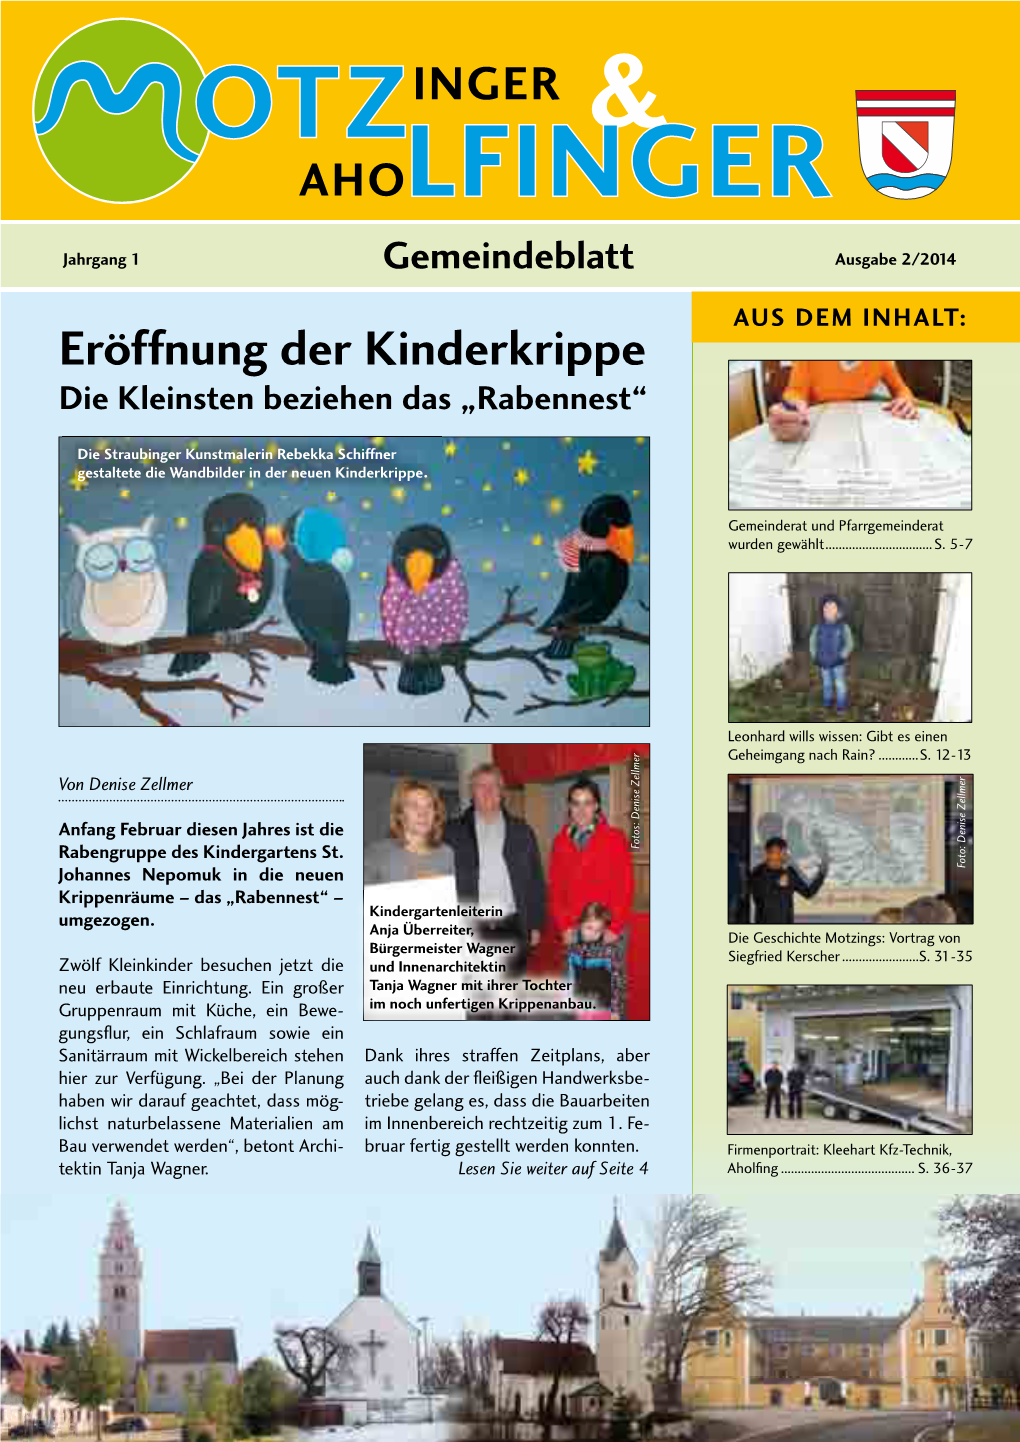 AHOLFINGER Sie Haben Auch Ein Schönes Foto Aus Unserer Gemeinde? Jahrgang 1 Gemeindeblatt Ausgabe 2/2014